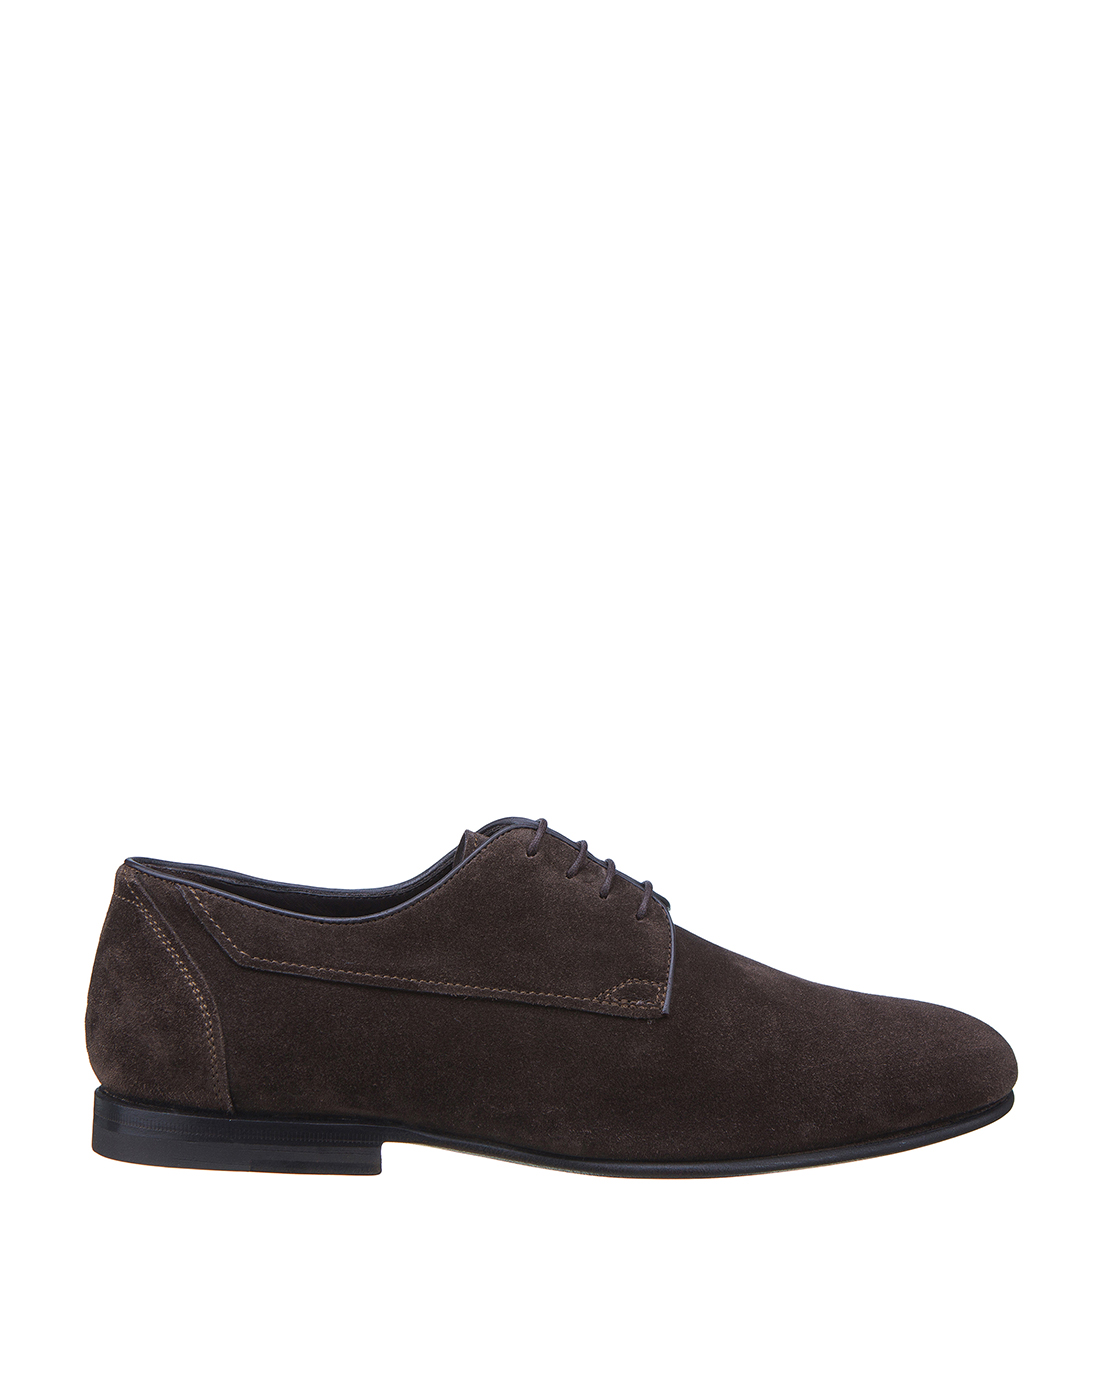 Туфли коричневые мужские Santoni S16438-1